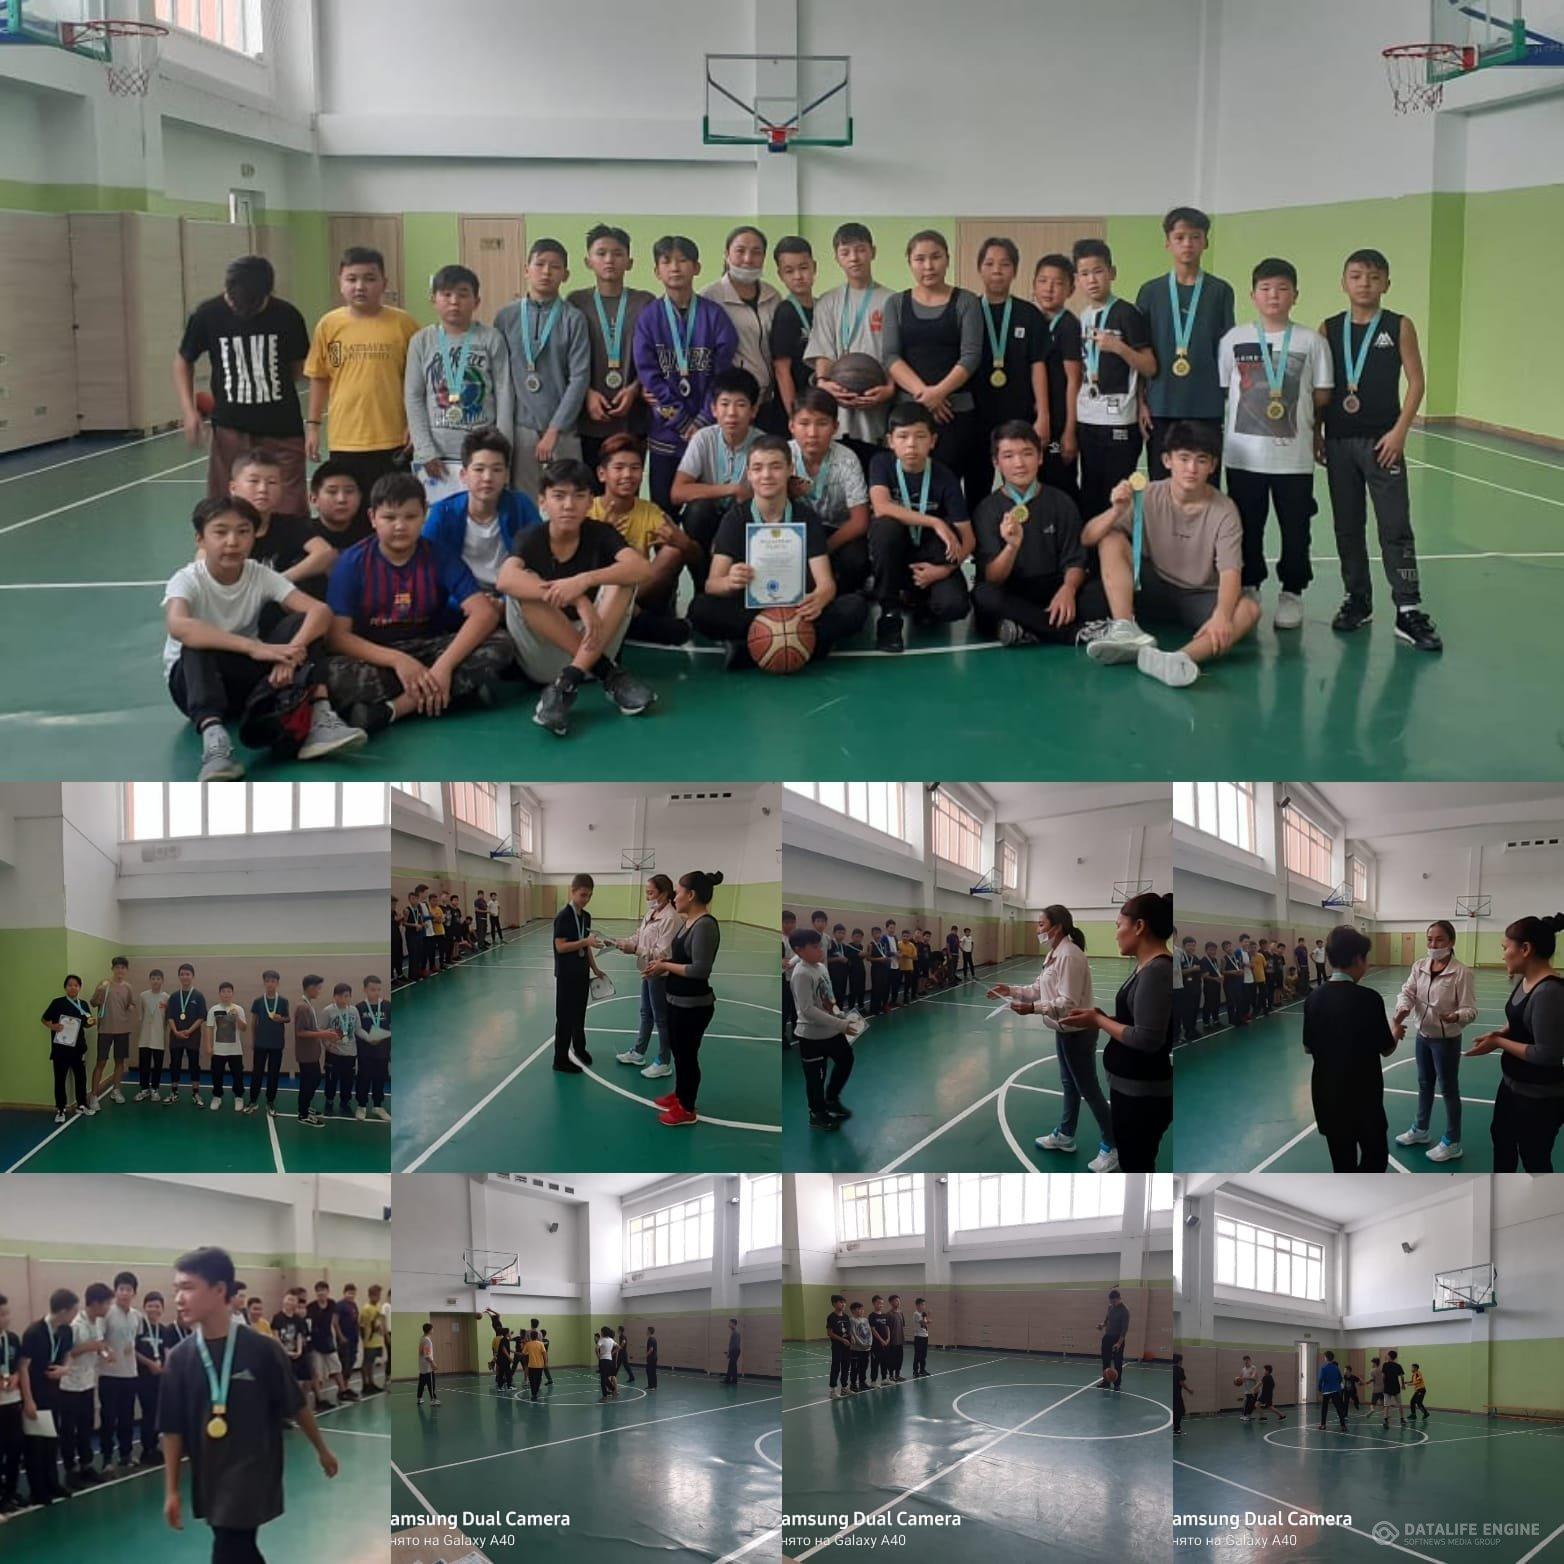 ҚР Тәуелсіздігінің 30 жылдығына орай баскетбол ойыны 7-8 сыныптар арасында мектепішілік спорттық турнир өткізілді.